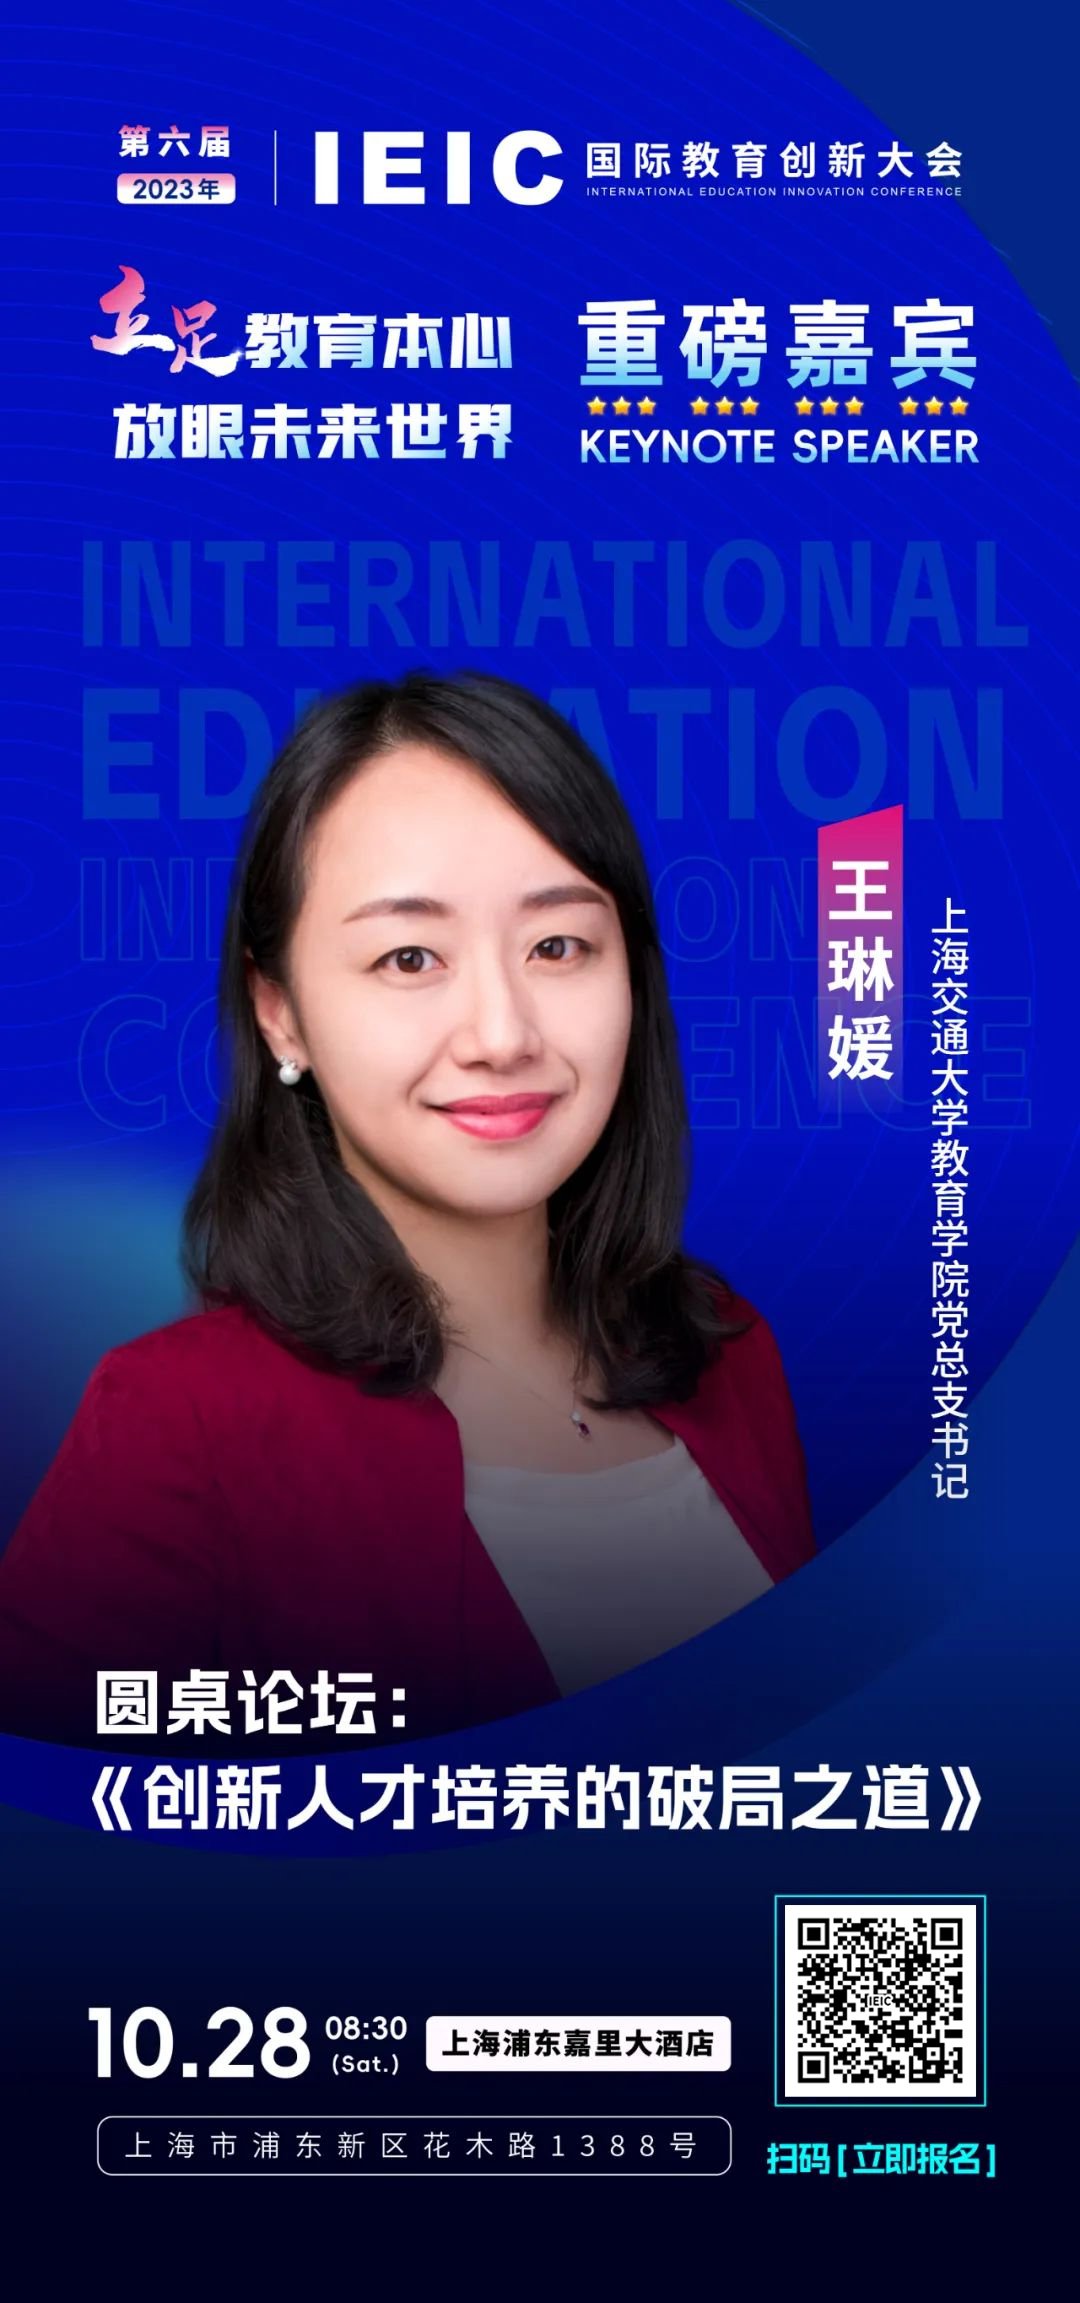 上海交通大学教育学院党总支书记王琳媛将出席第六届IEIC国际教育创新大会